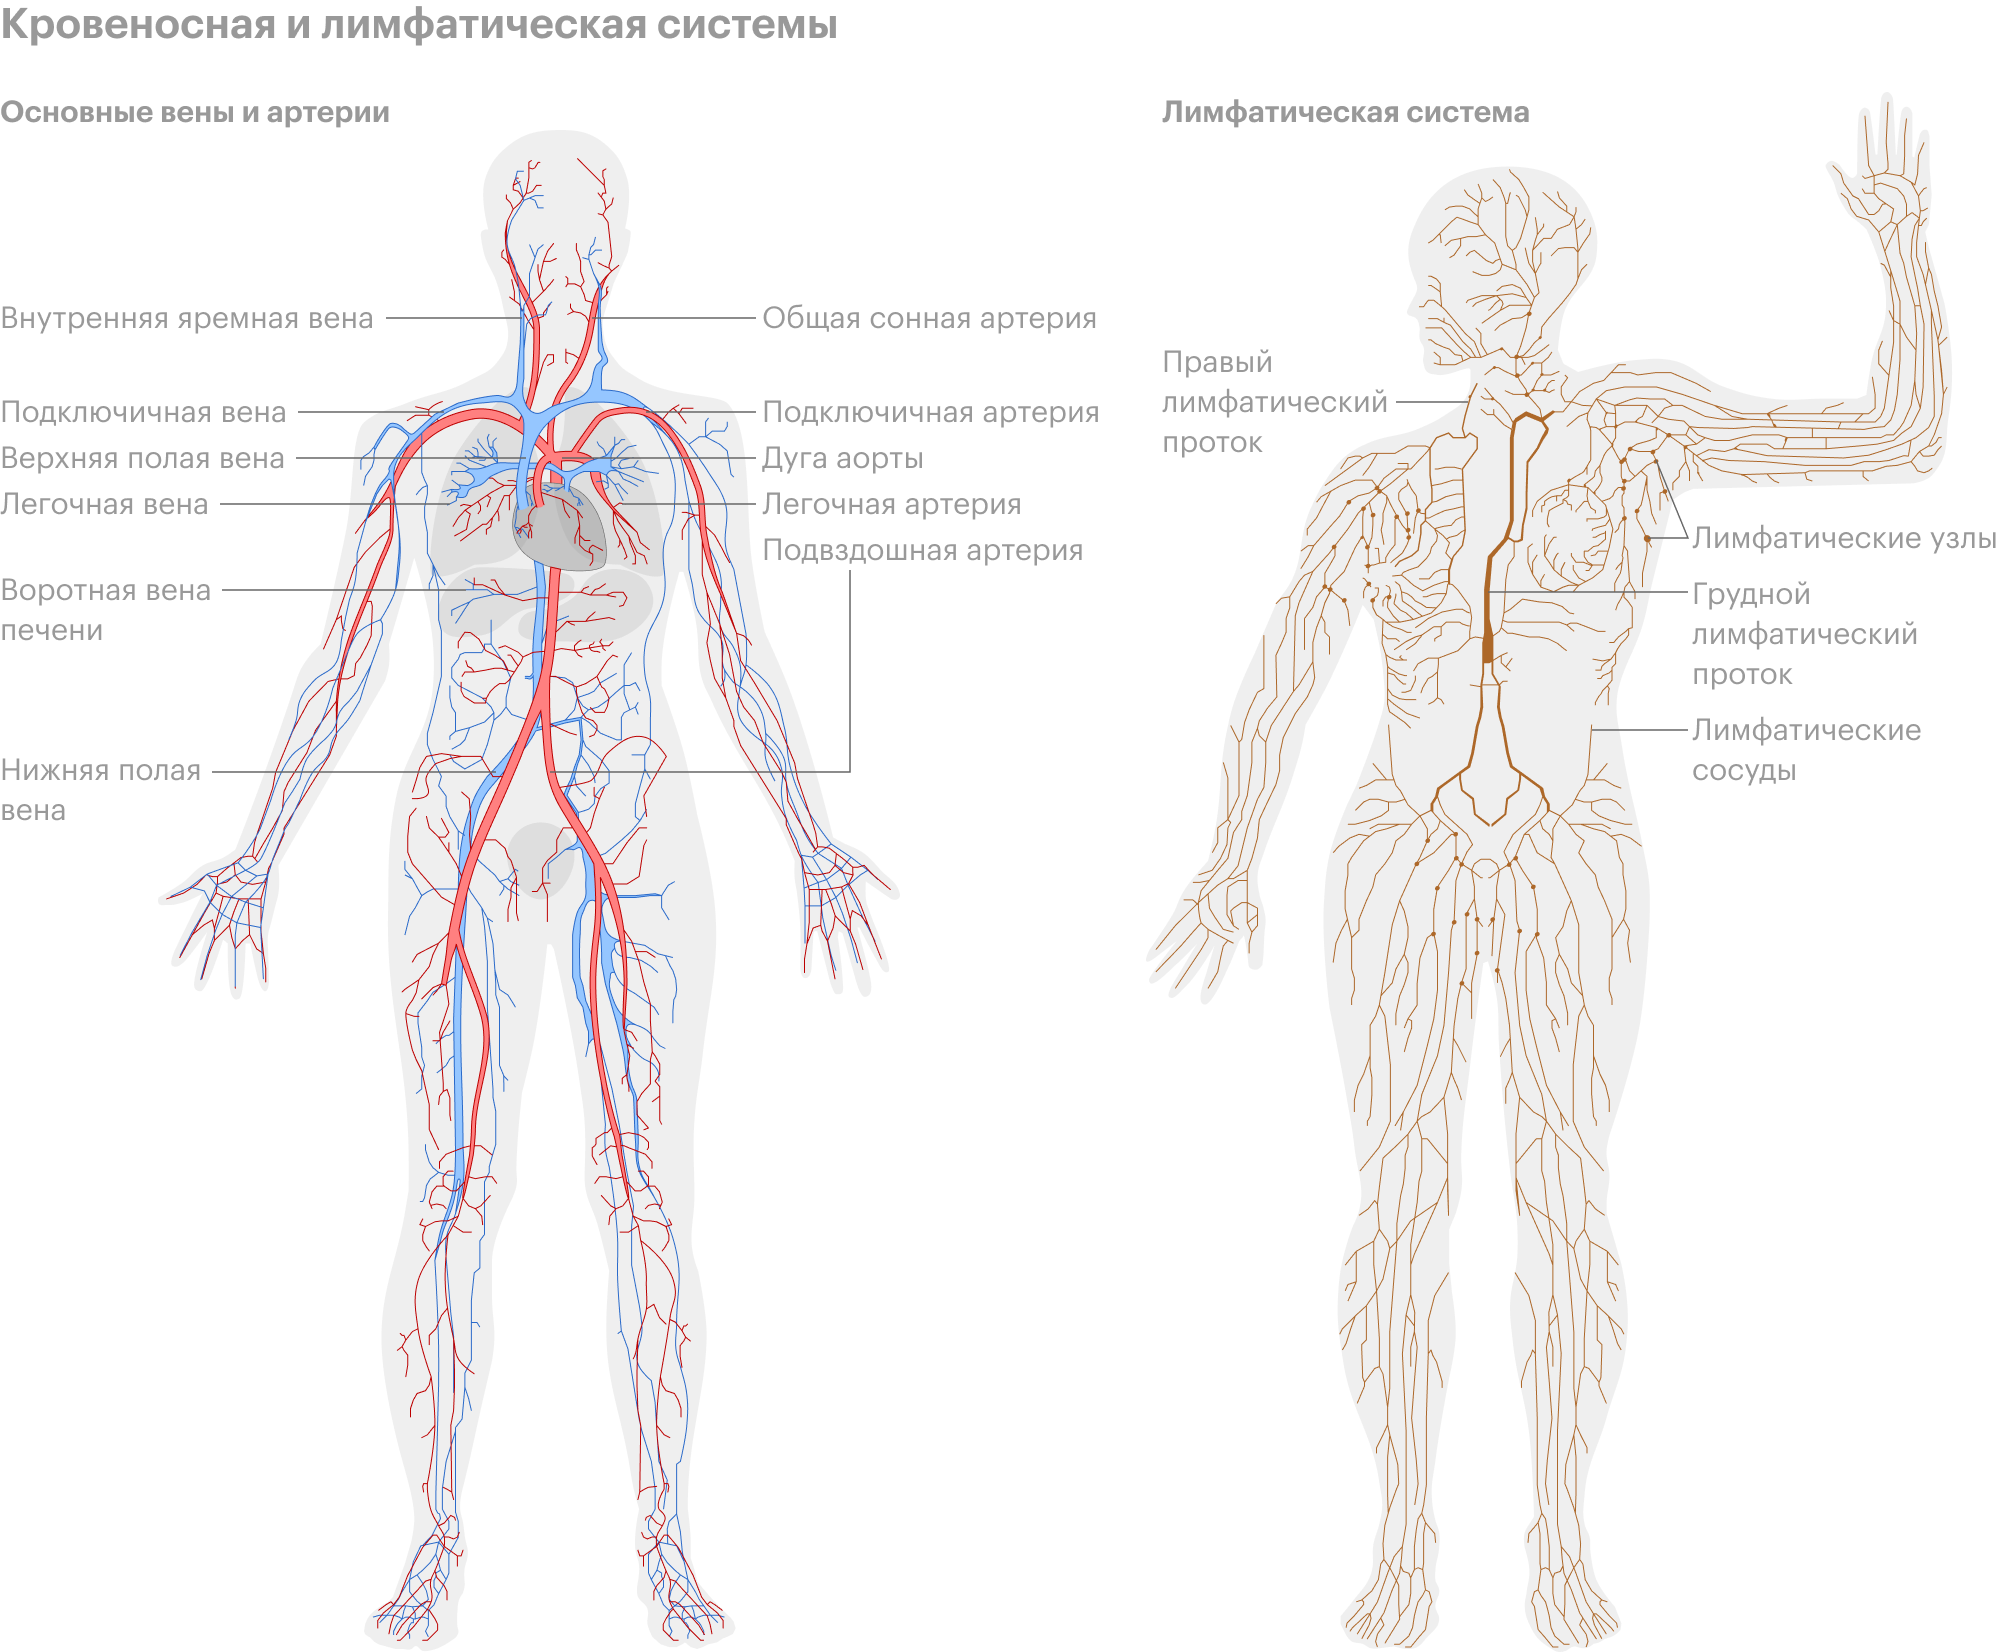 Лимфатическая система человека схема. Кровеносная и лимфатическая система человека схема. Лимфосистема человека схема движения лимфы. Лимфатическая система человека рисунок. Рисунок лимфатической системы